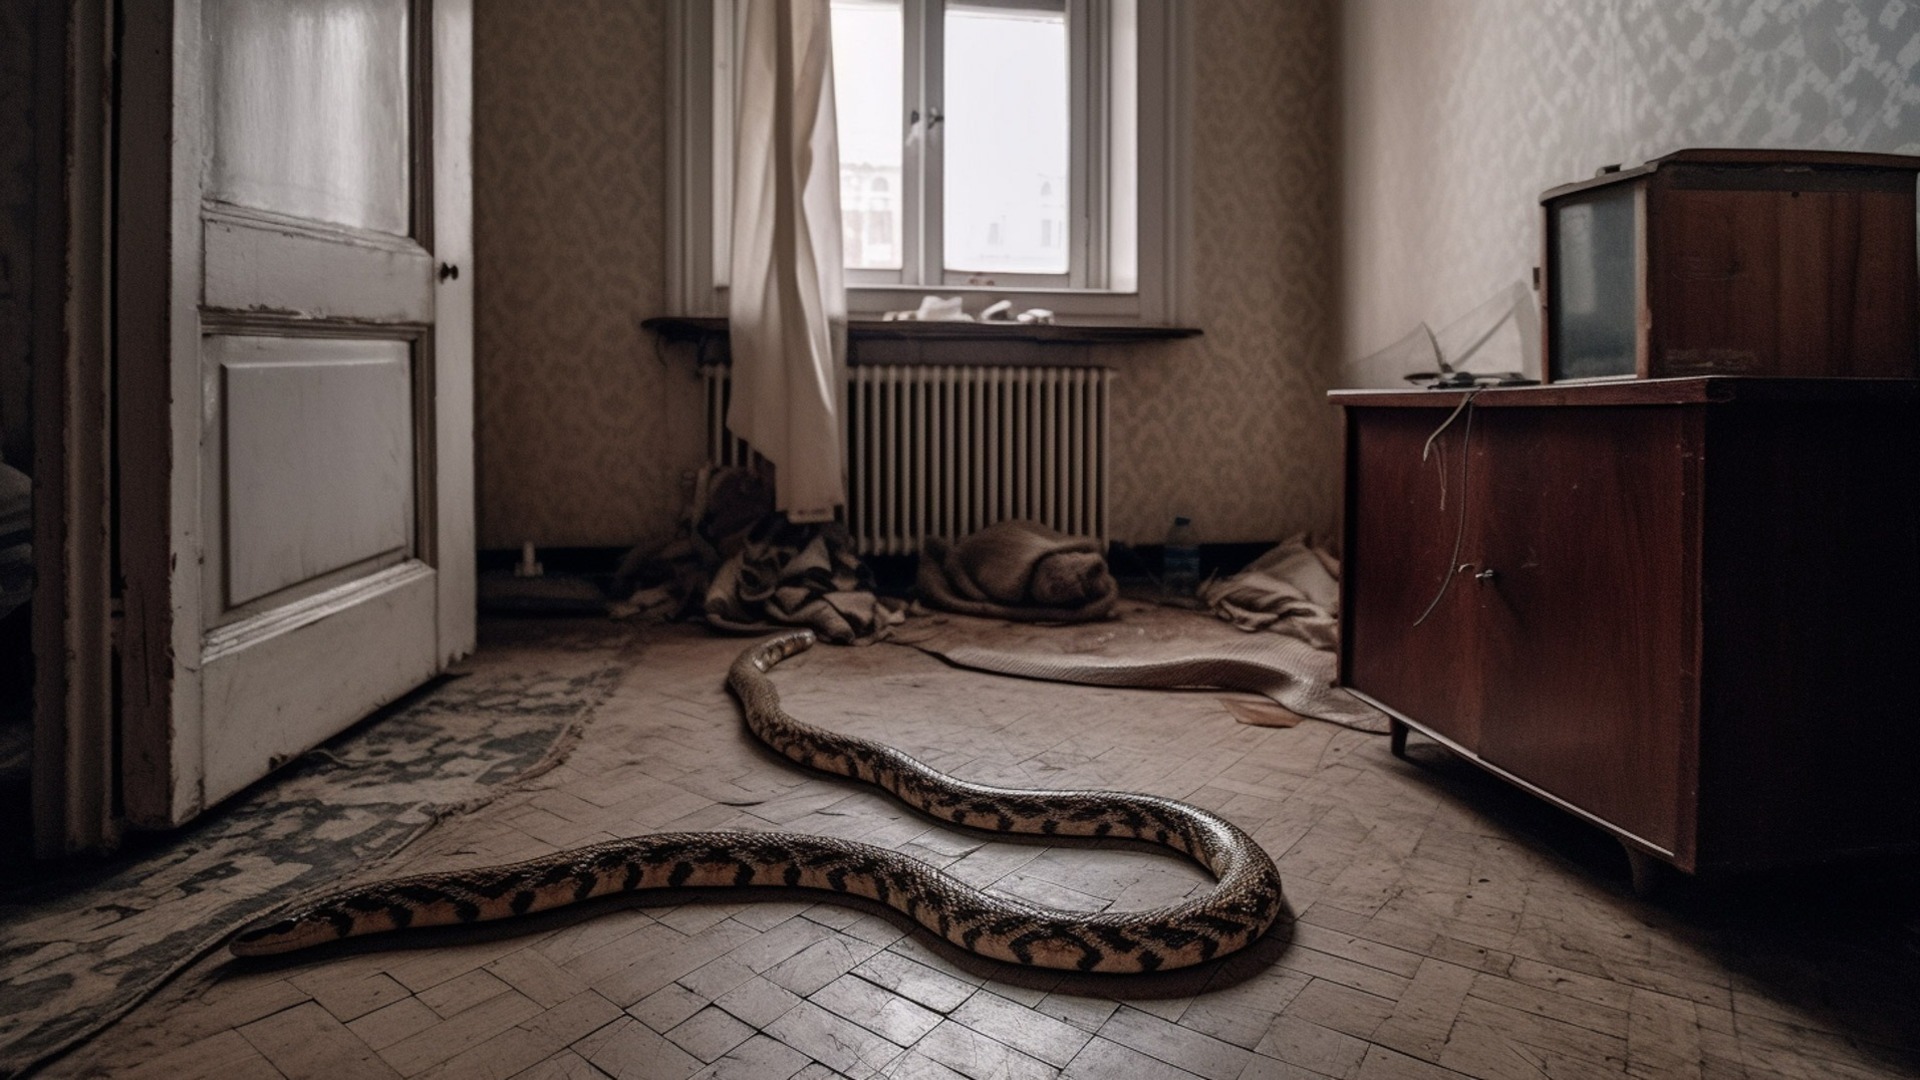 Неприятная встреча: змею заметили прямо в центре Владивостока